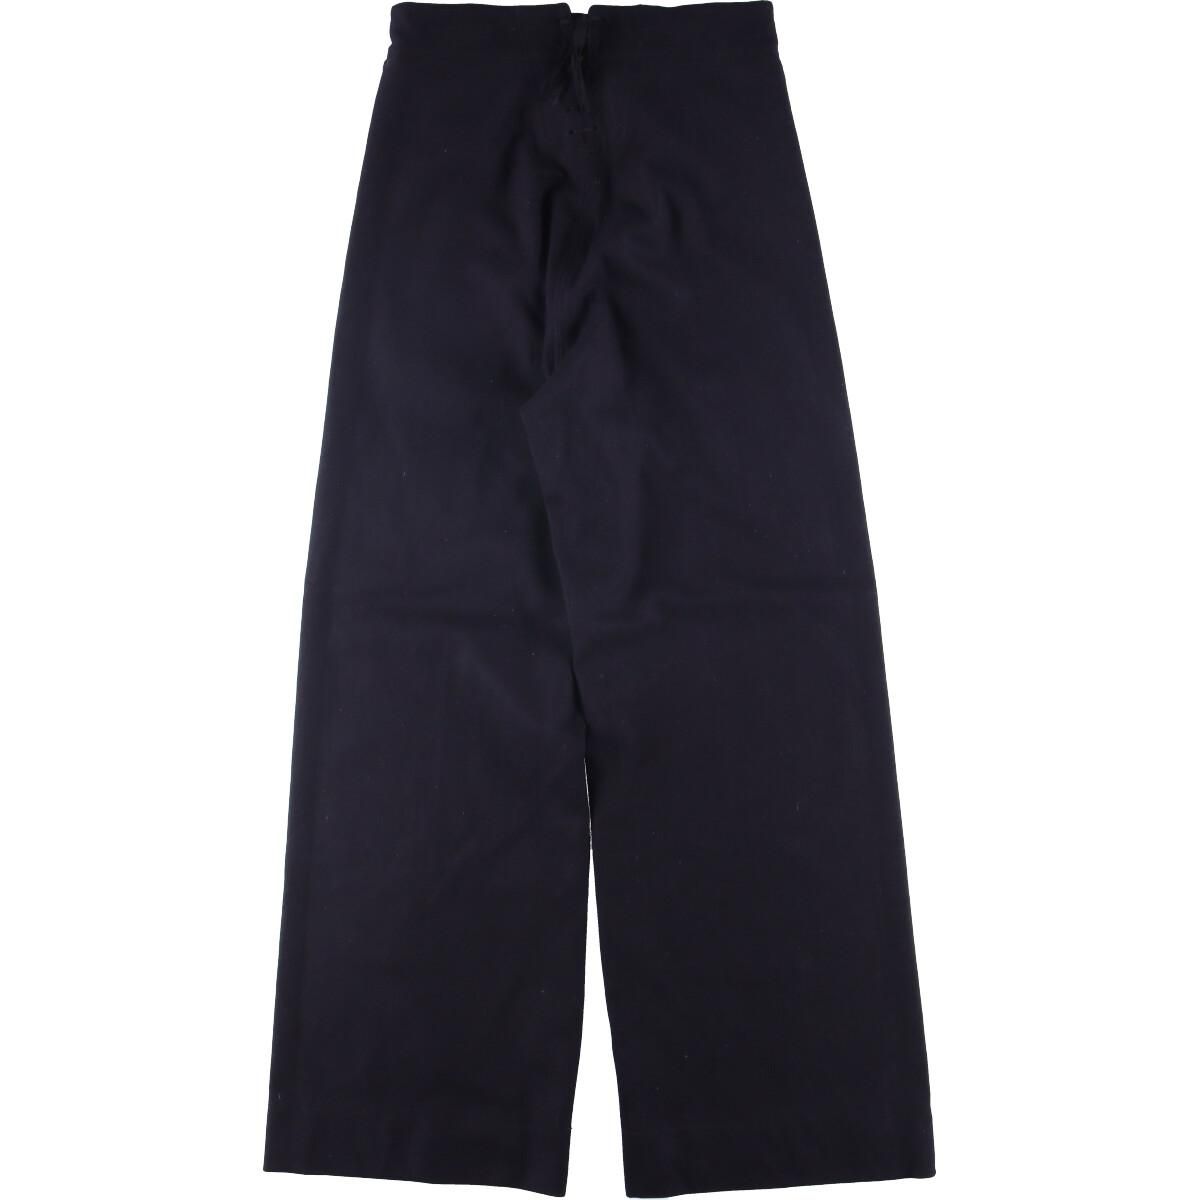 US NAVY 40s cotton sailor pants w30